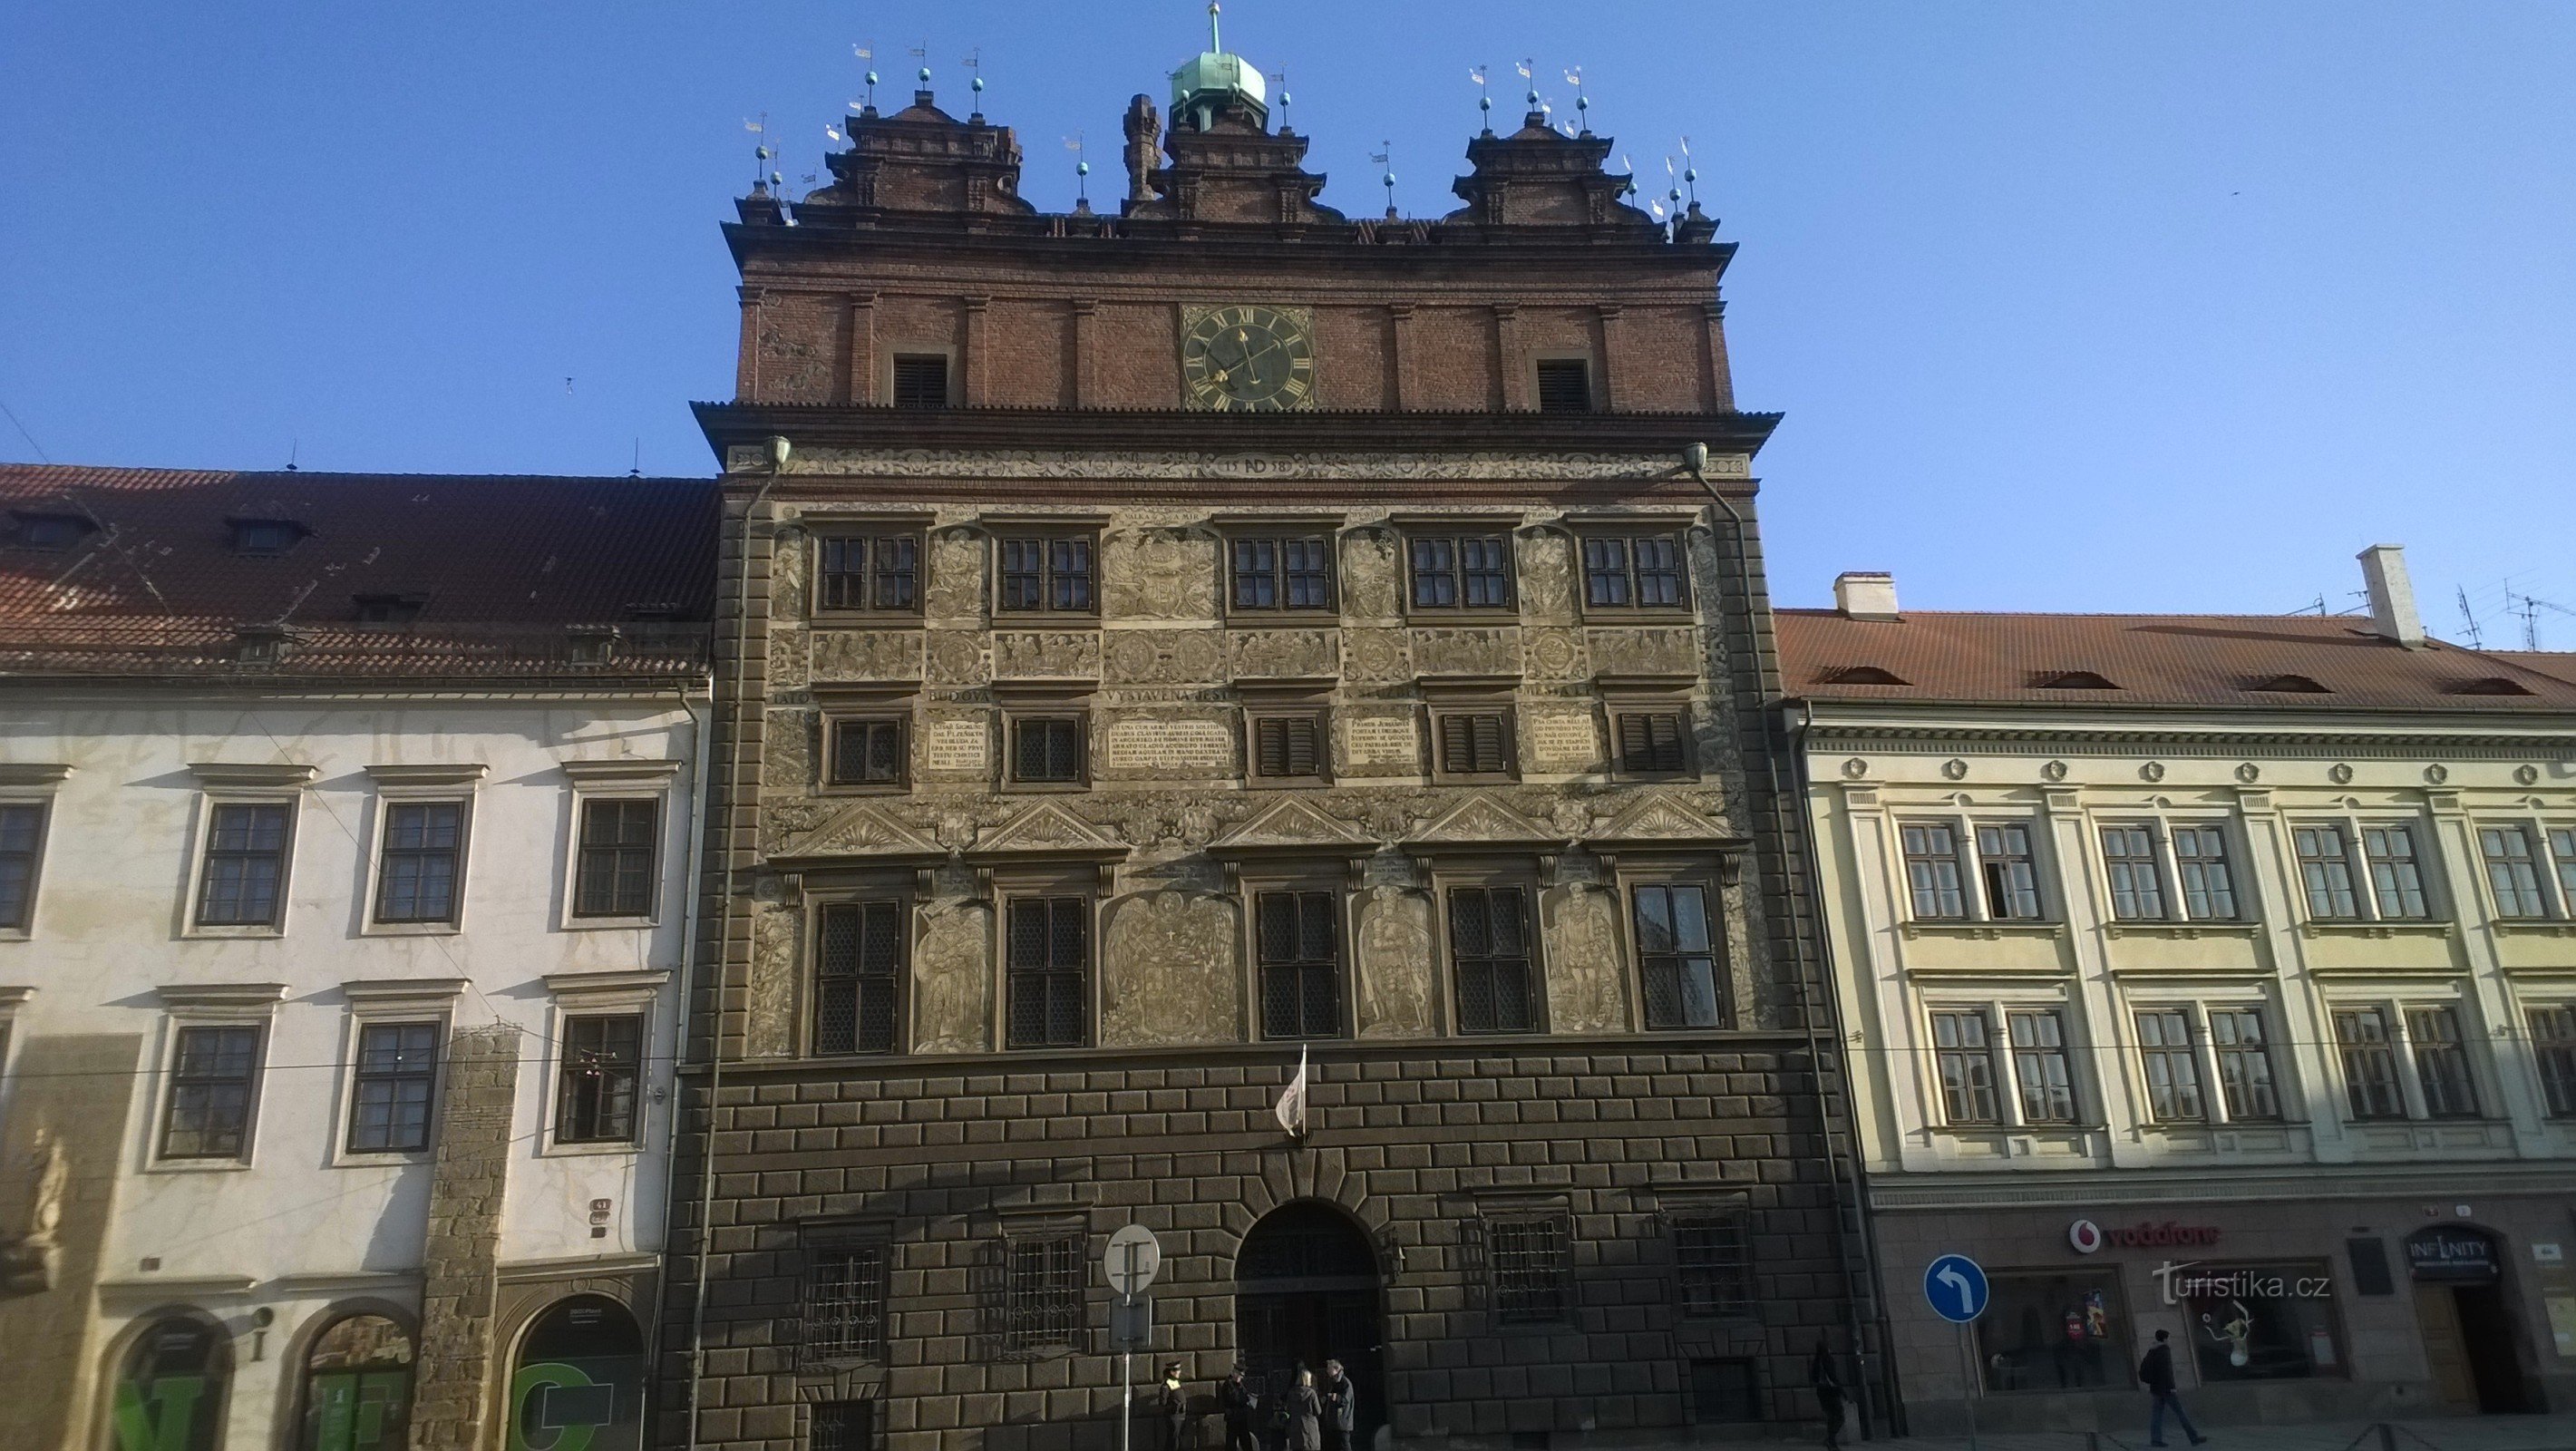 Ренесансна будівля ратуші Пльзень.